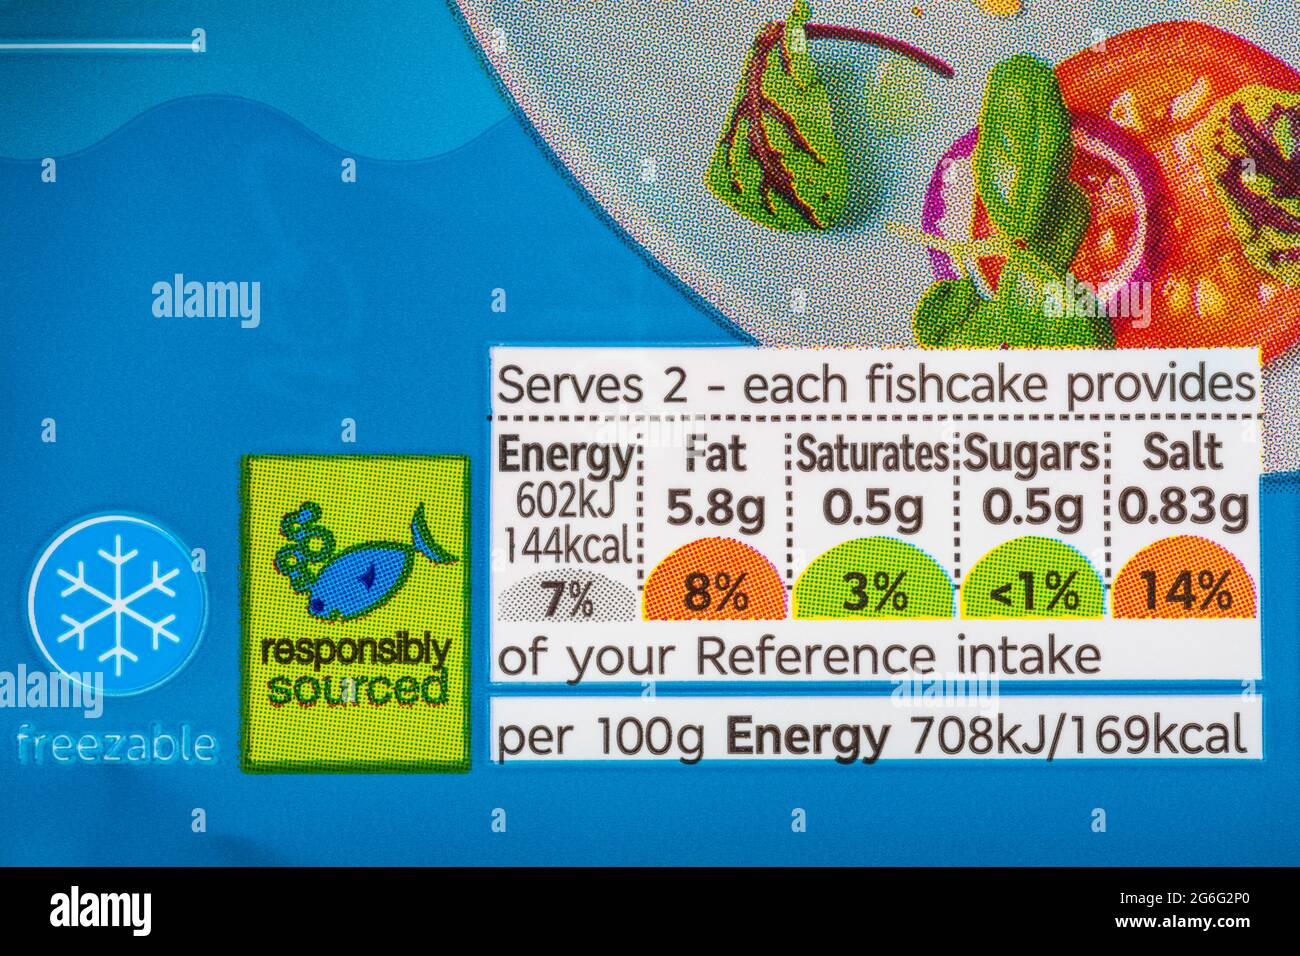 Informations nutritionnelles système de signalisation routière avec code couleur et symbole de source responsable sur le paquet de galettes de poisson M&S Haddock Banque D'Images